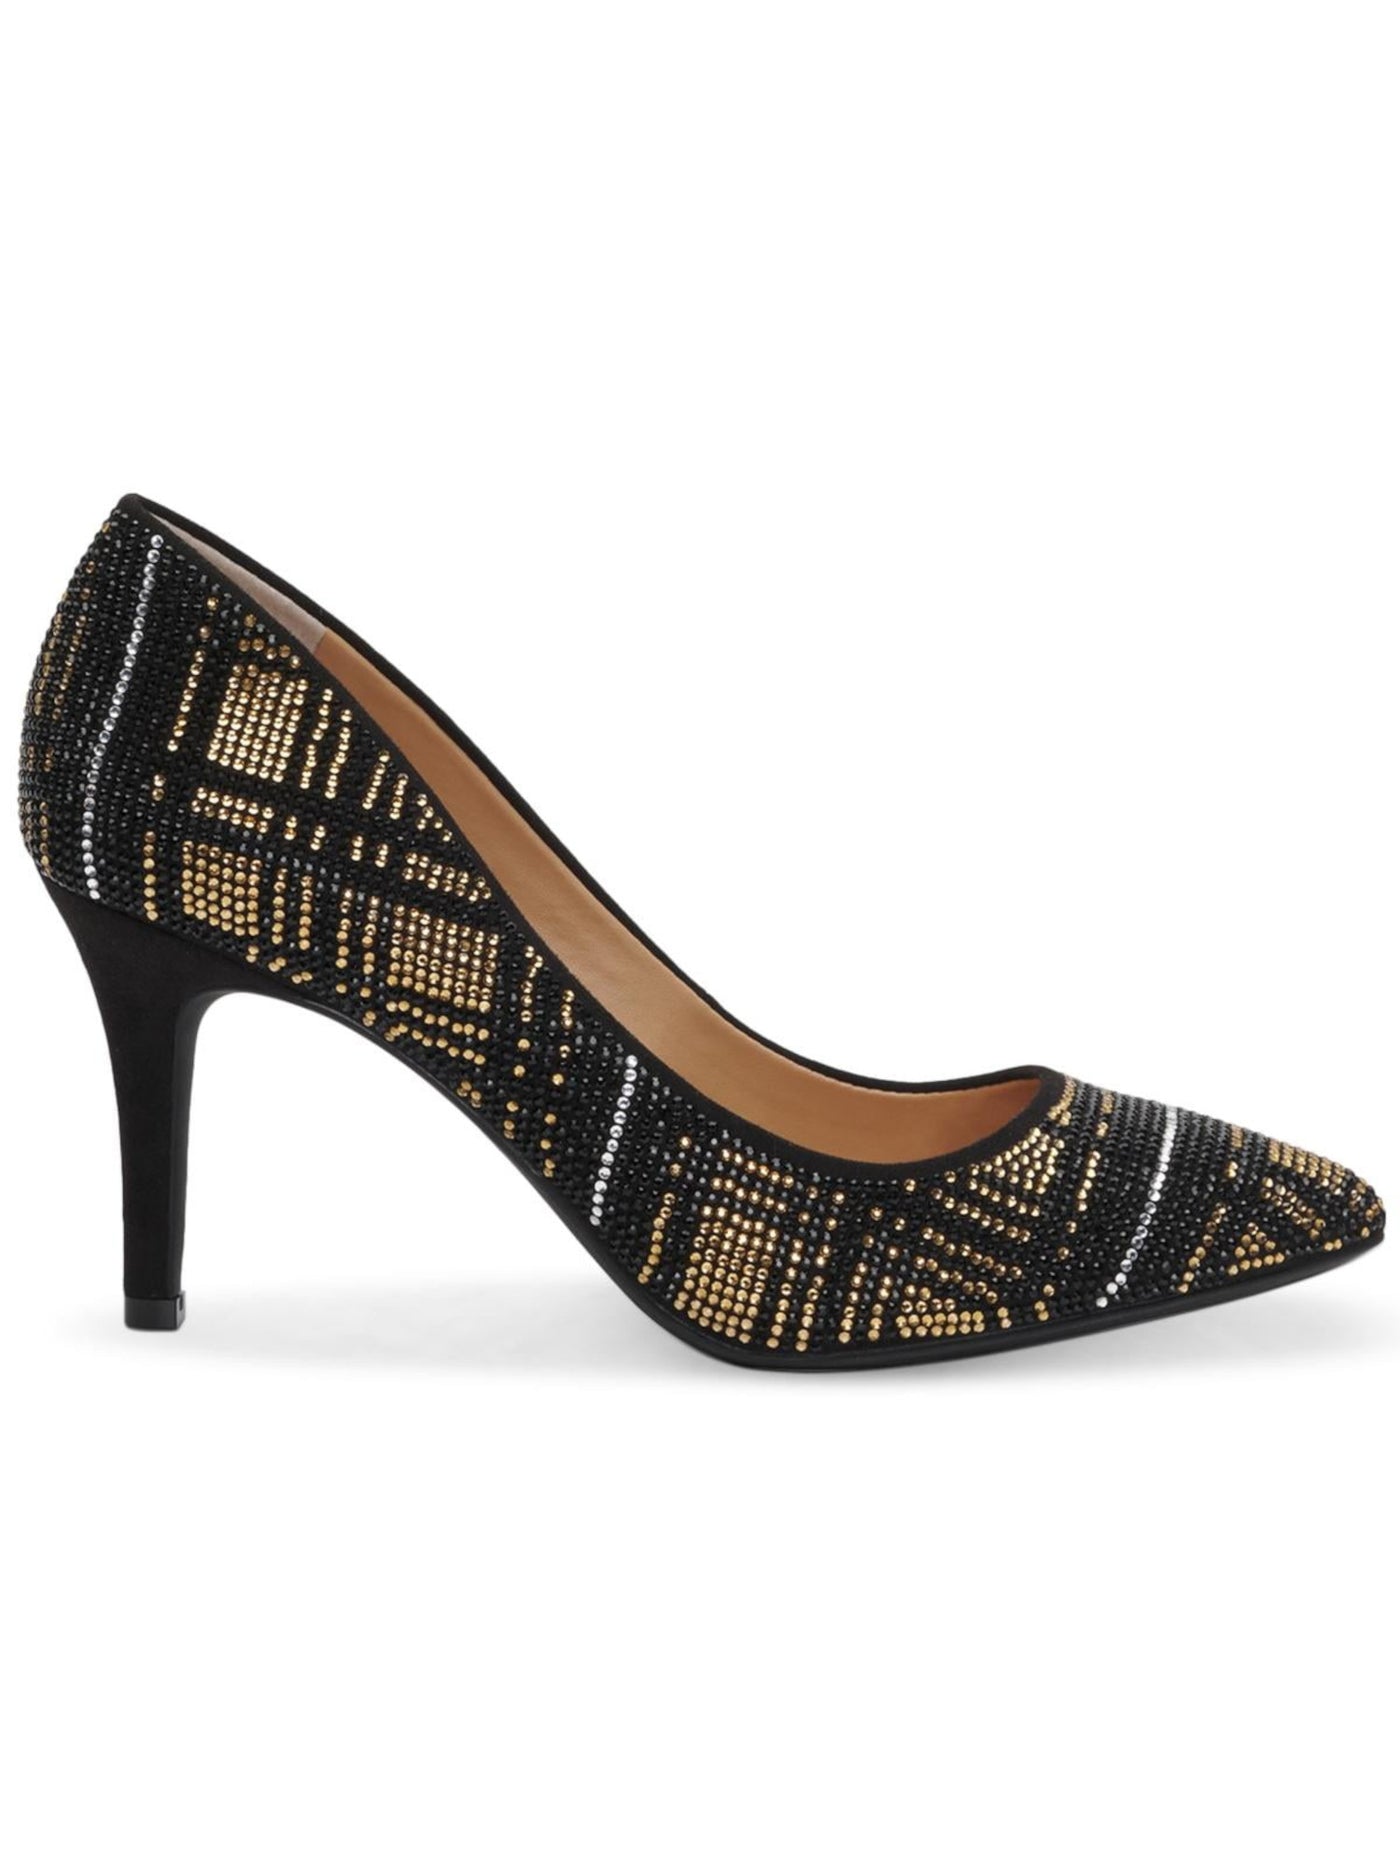 INC Womens Black Plaid Rhinestone Zitah Round Toe Stiletto Slip On Pumps Shoes 5.5 M